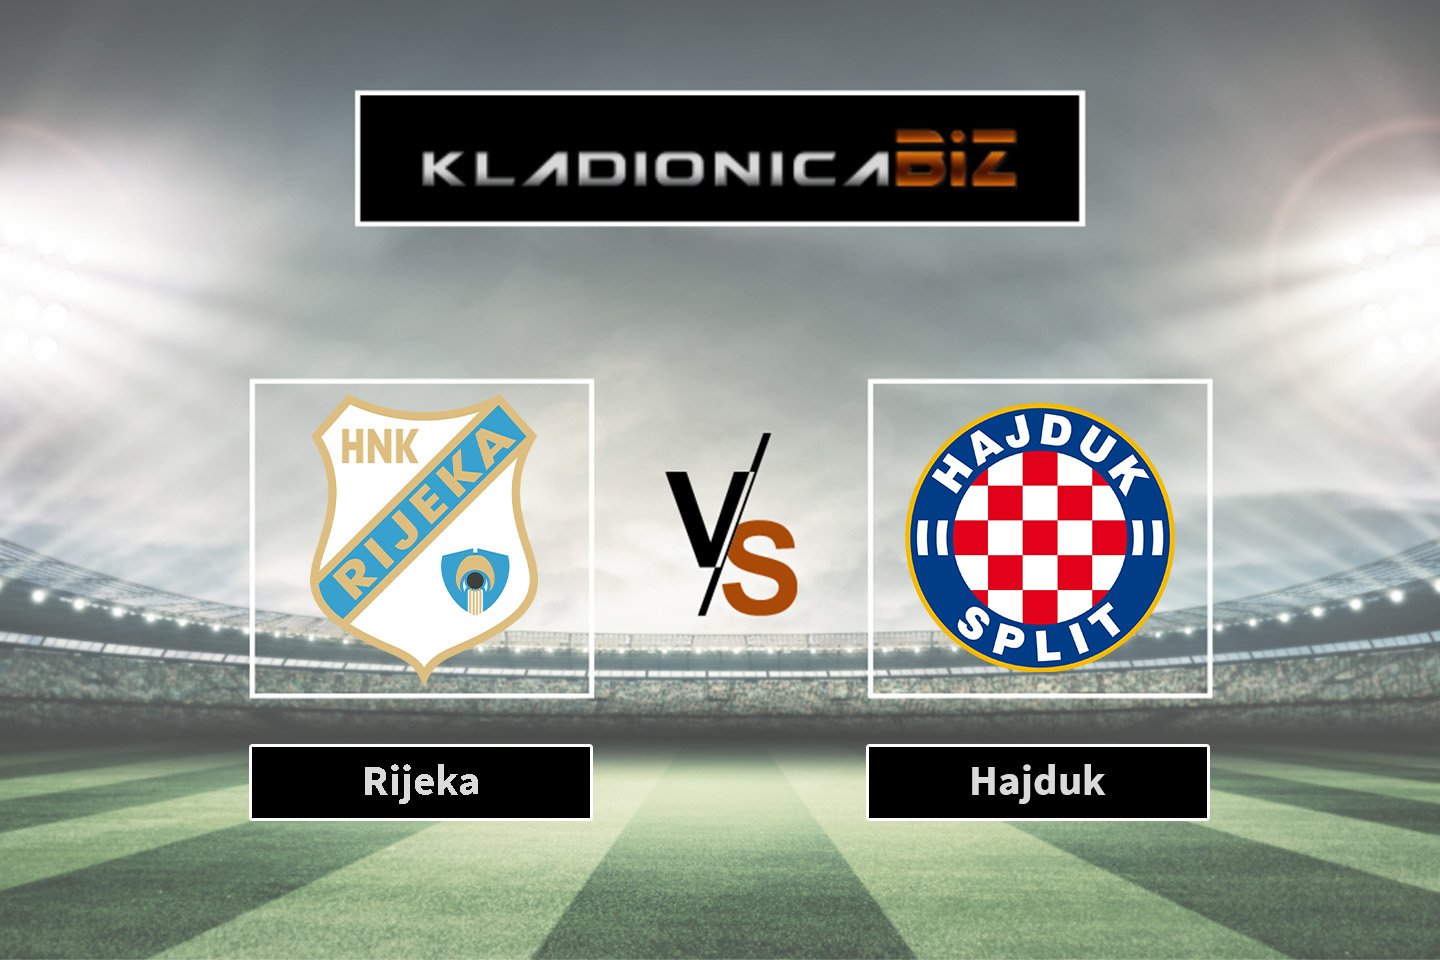 HNK Rijeka vs Hajduk Split HNK Rijeka Stadium Rujevica Rijeka Tickets